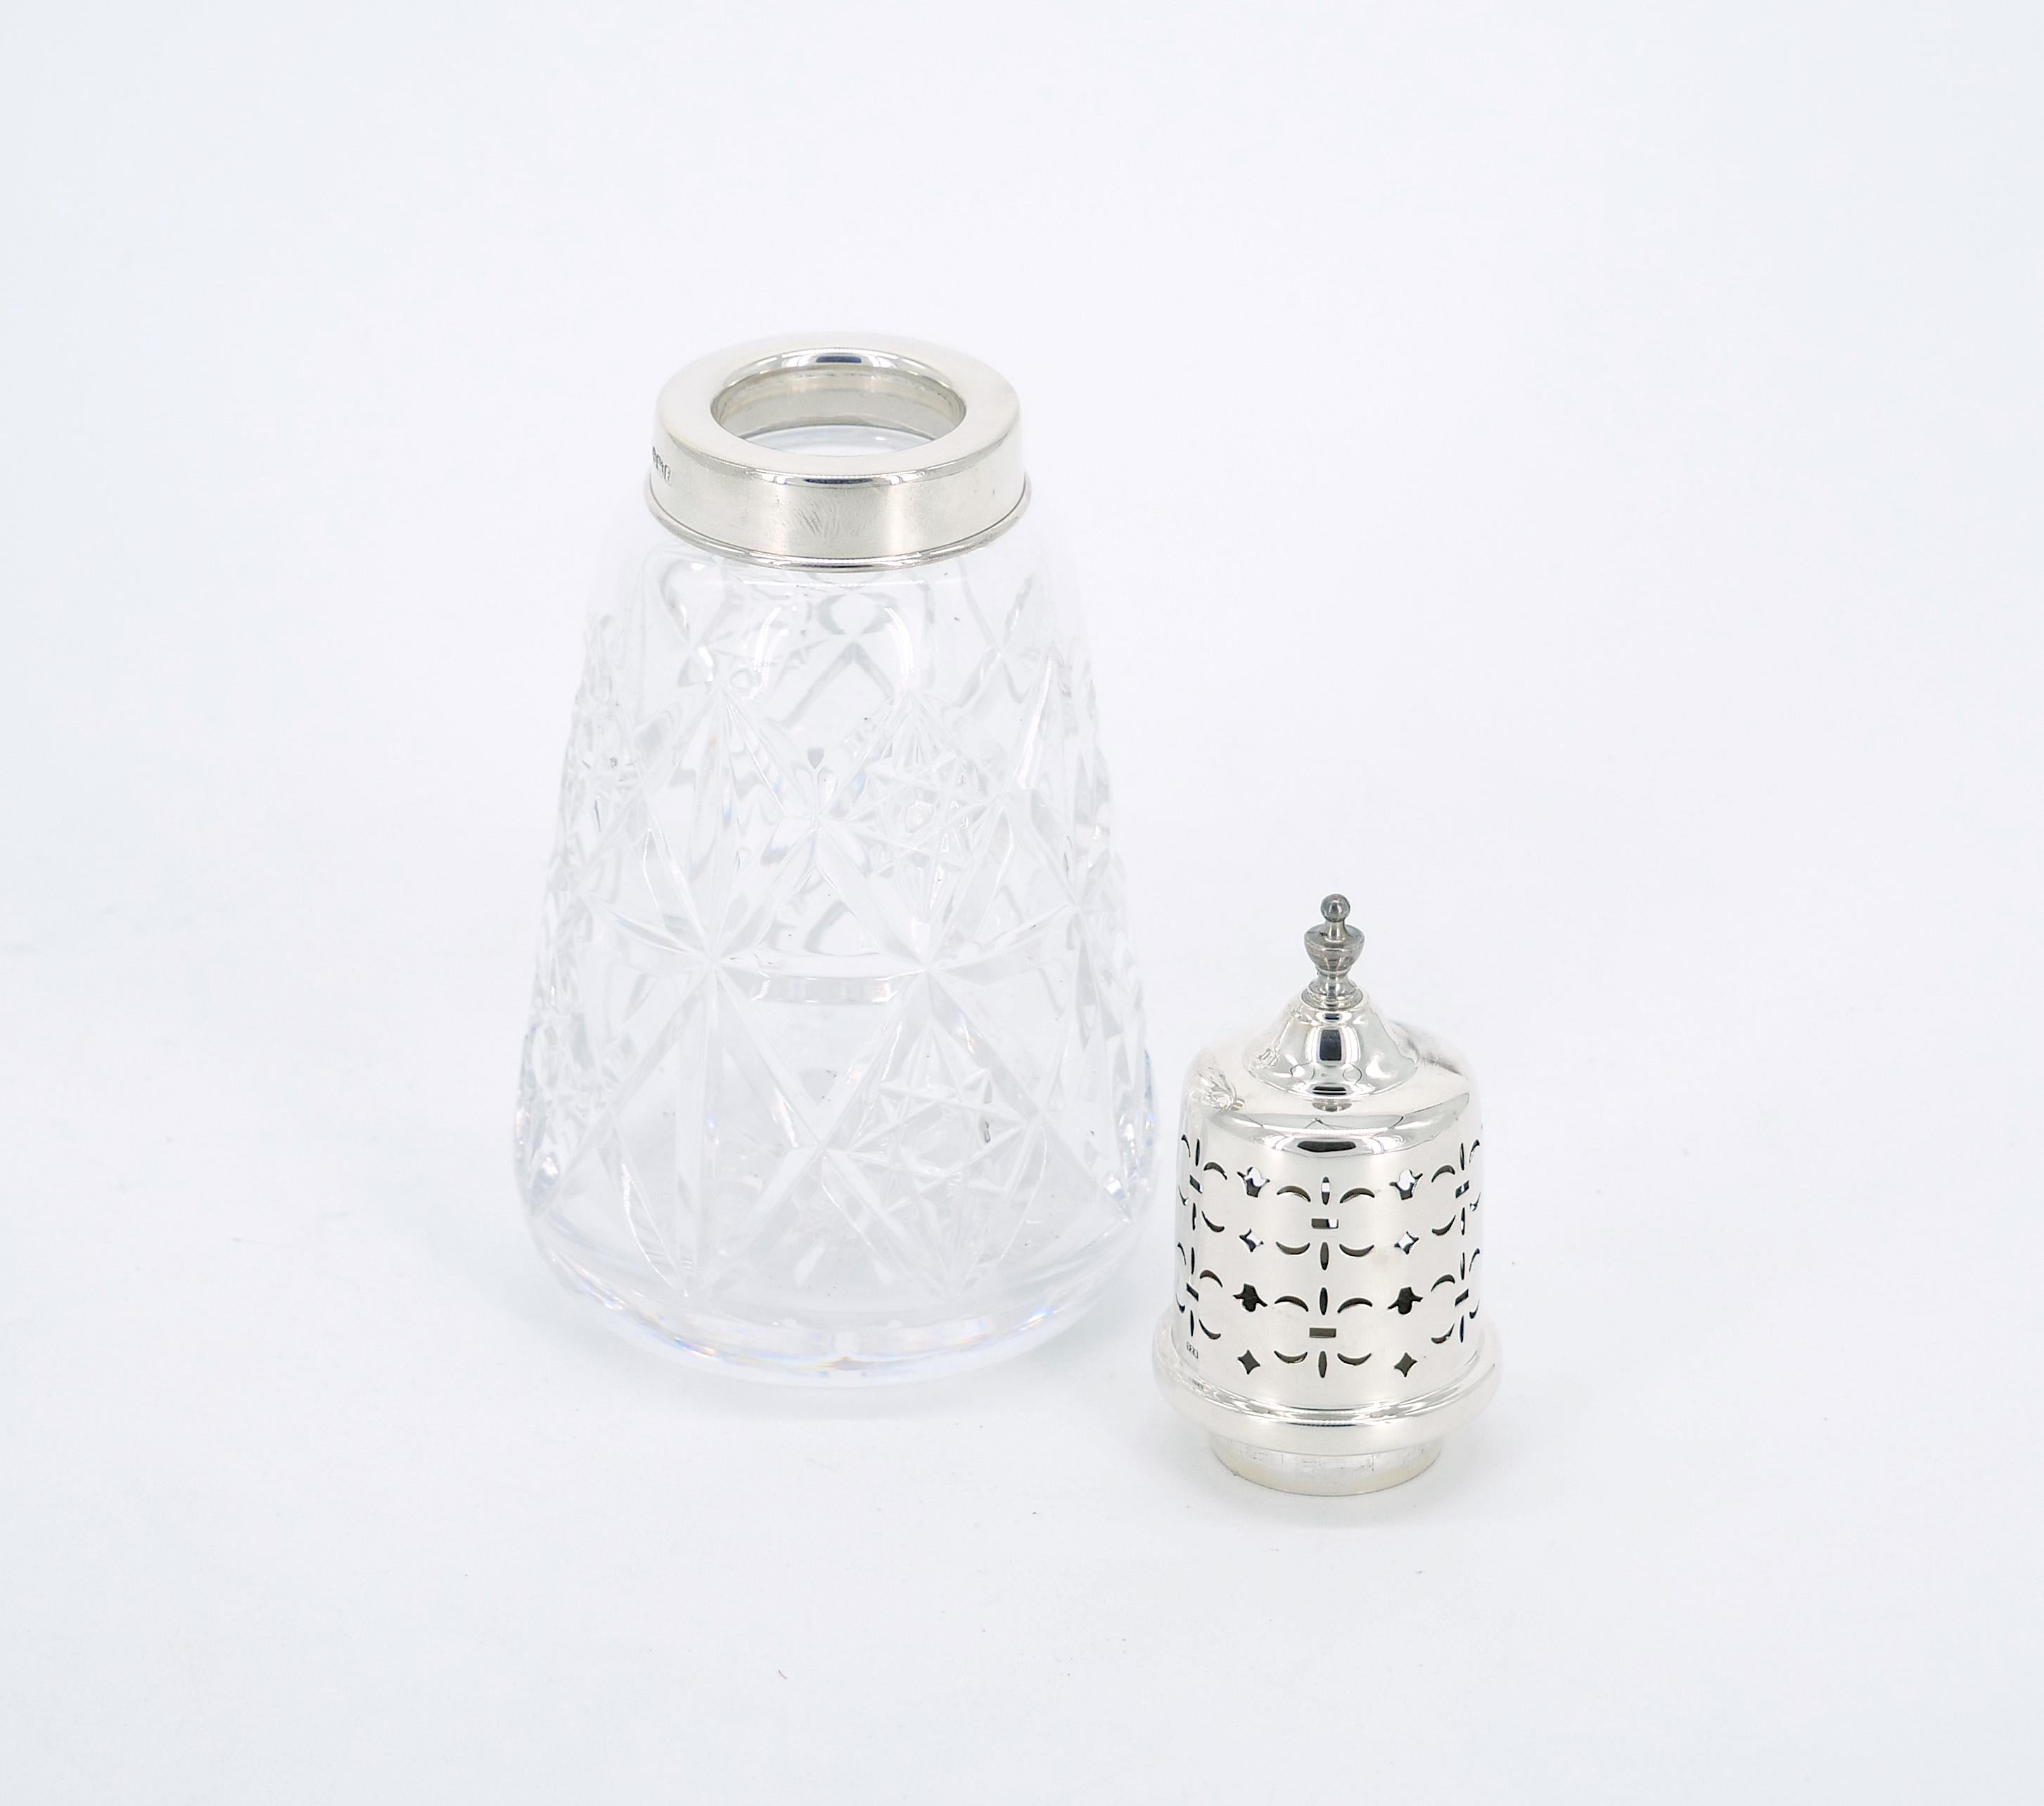 Dieser exquisite englische Sterling Silver Top Cut Glass Sugar Receptacle ist eine perfekte Mischung aus Handwerkskunst und Eleganz. Das handgravierte Äußere verleiht diesem klassischen Geschirr einen Hauch von Raffinesse. Das tadellos erhaltene